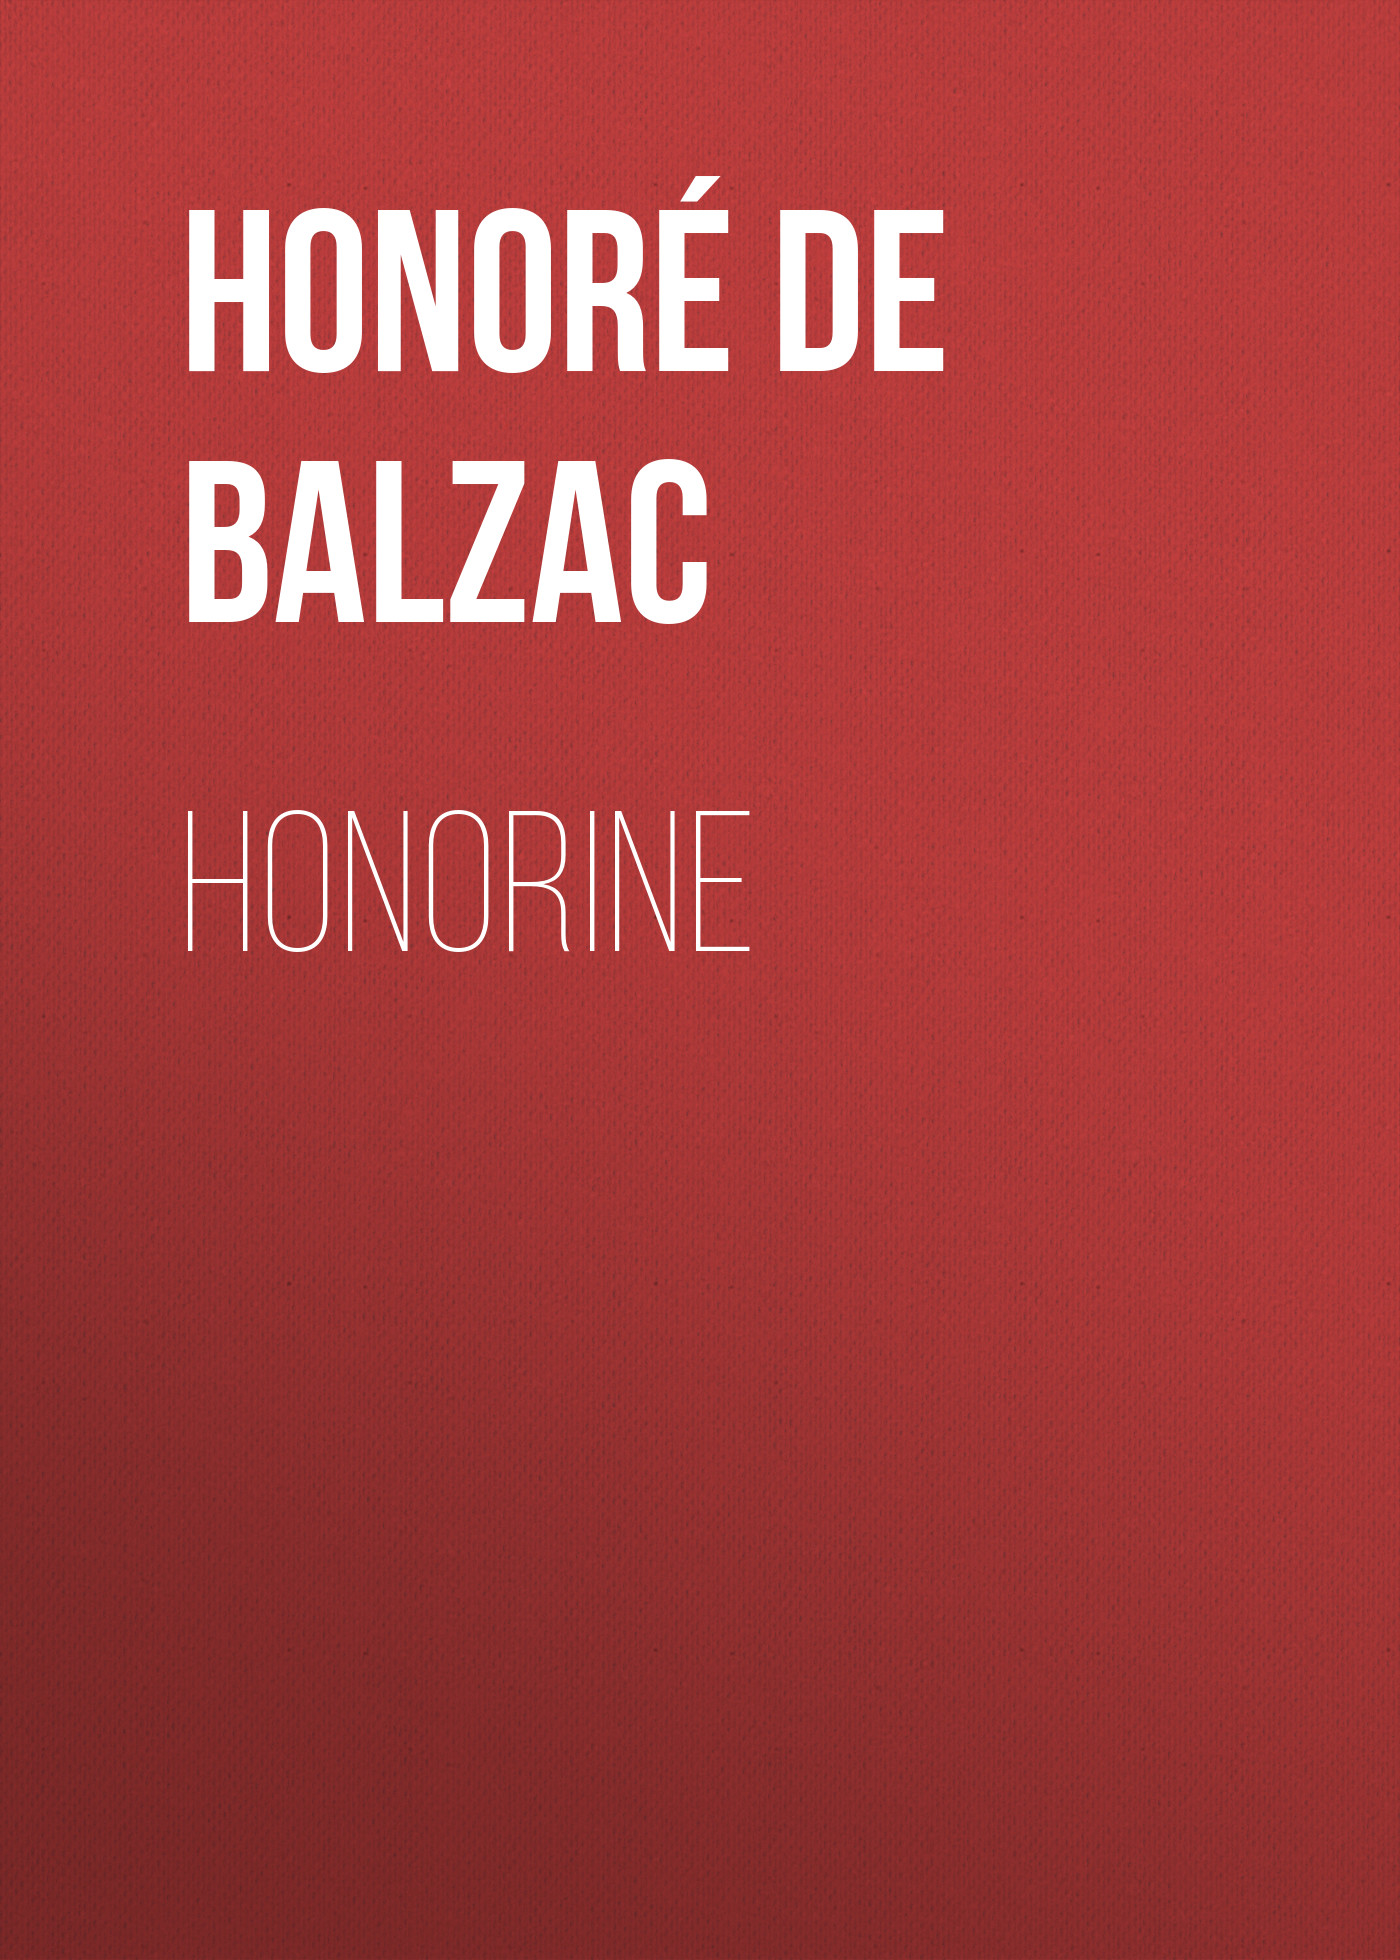 Книга Honorine из серии , созданная Honoré Balzac, может относится к жанру Литература 19 века, Зарубежная старинная литература, Зарубежная классика. Стоимость электронной книги Honorine с идентификатором 25021035 составляет 0 руб.